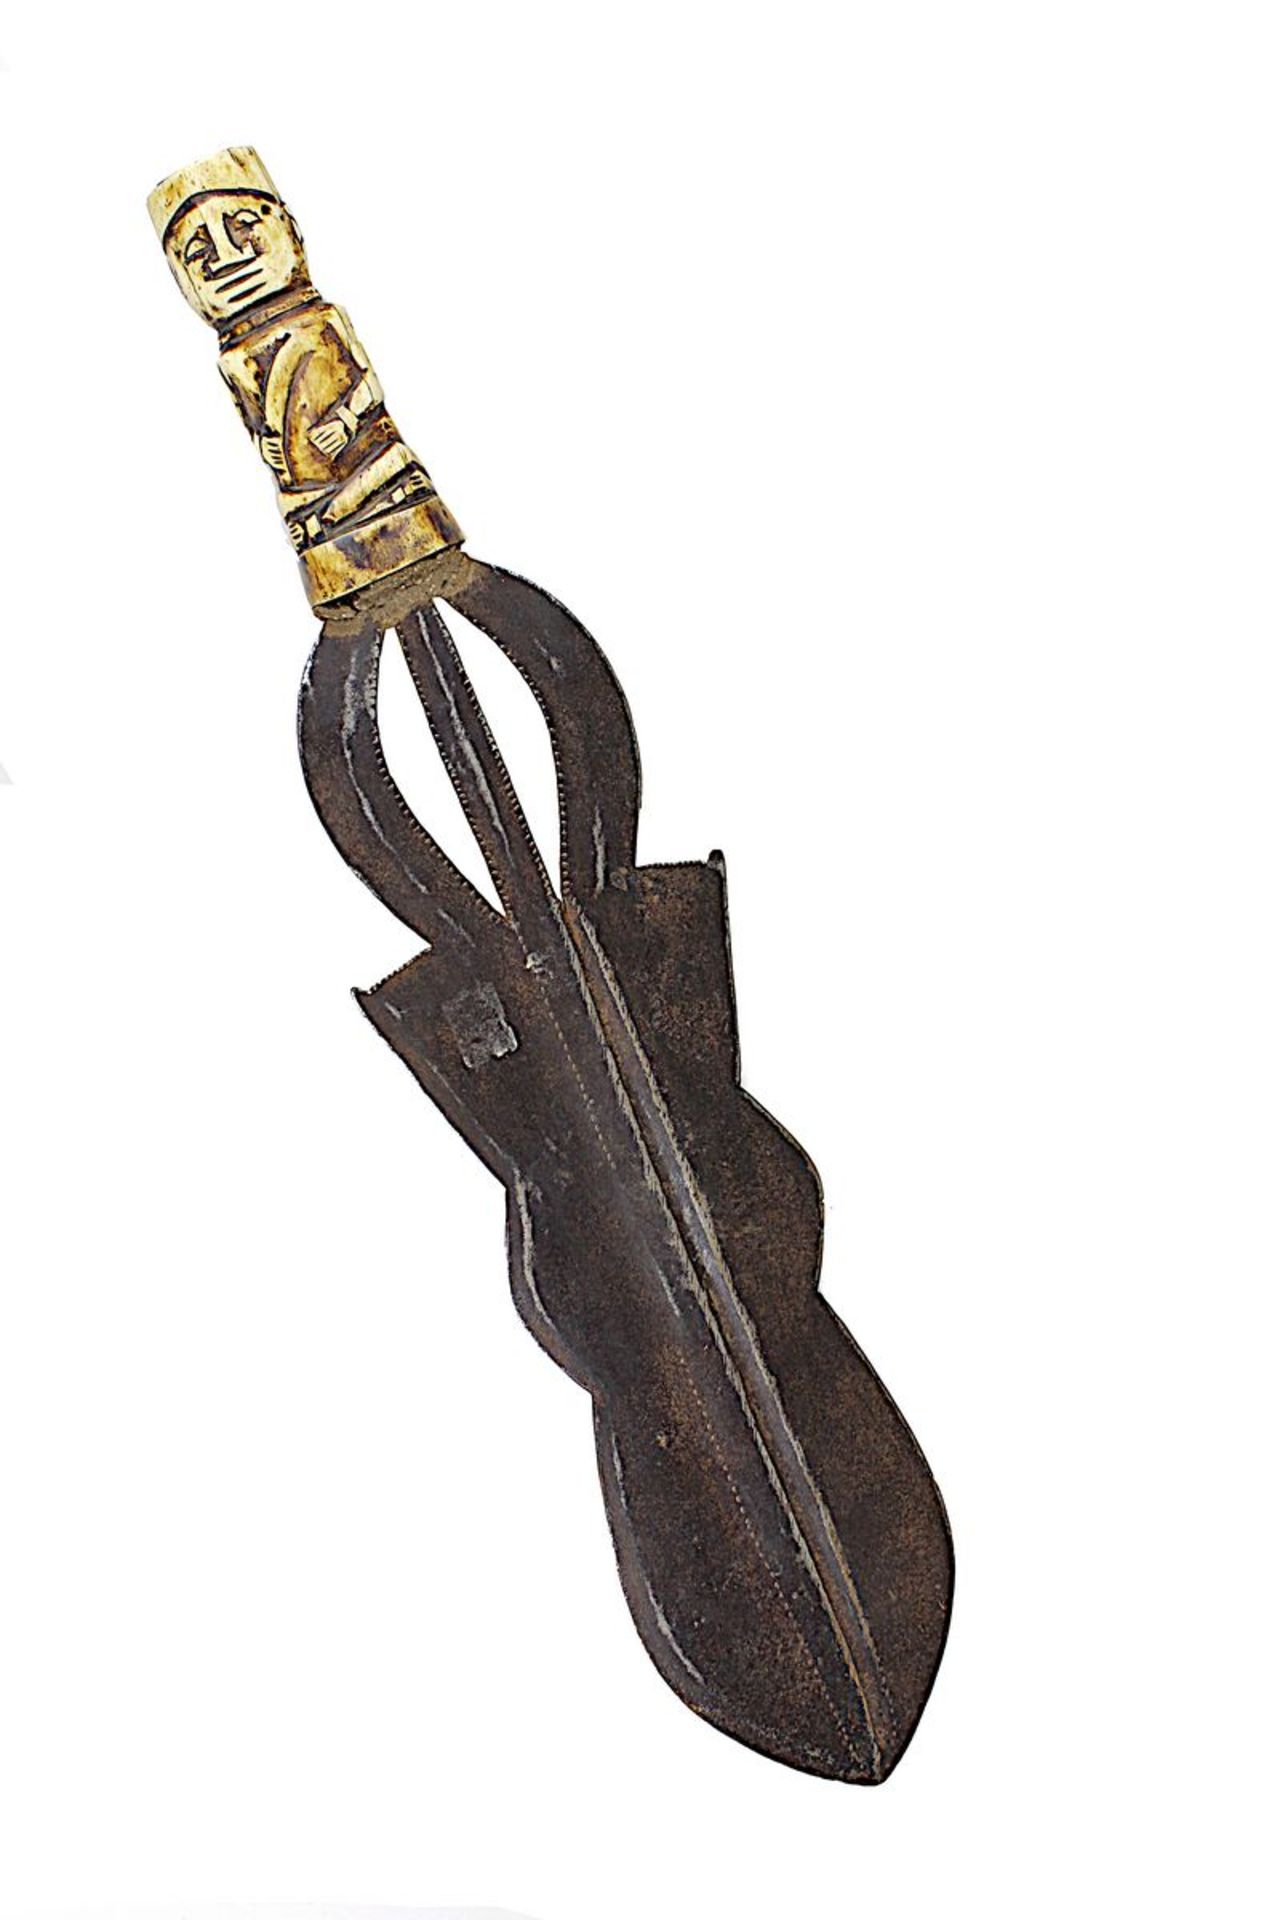 Ngombe-Schwert, D. R. Kongo, Klinge aus geschmiedetem Eisen, gerade und zweischneidige, mehrfach